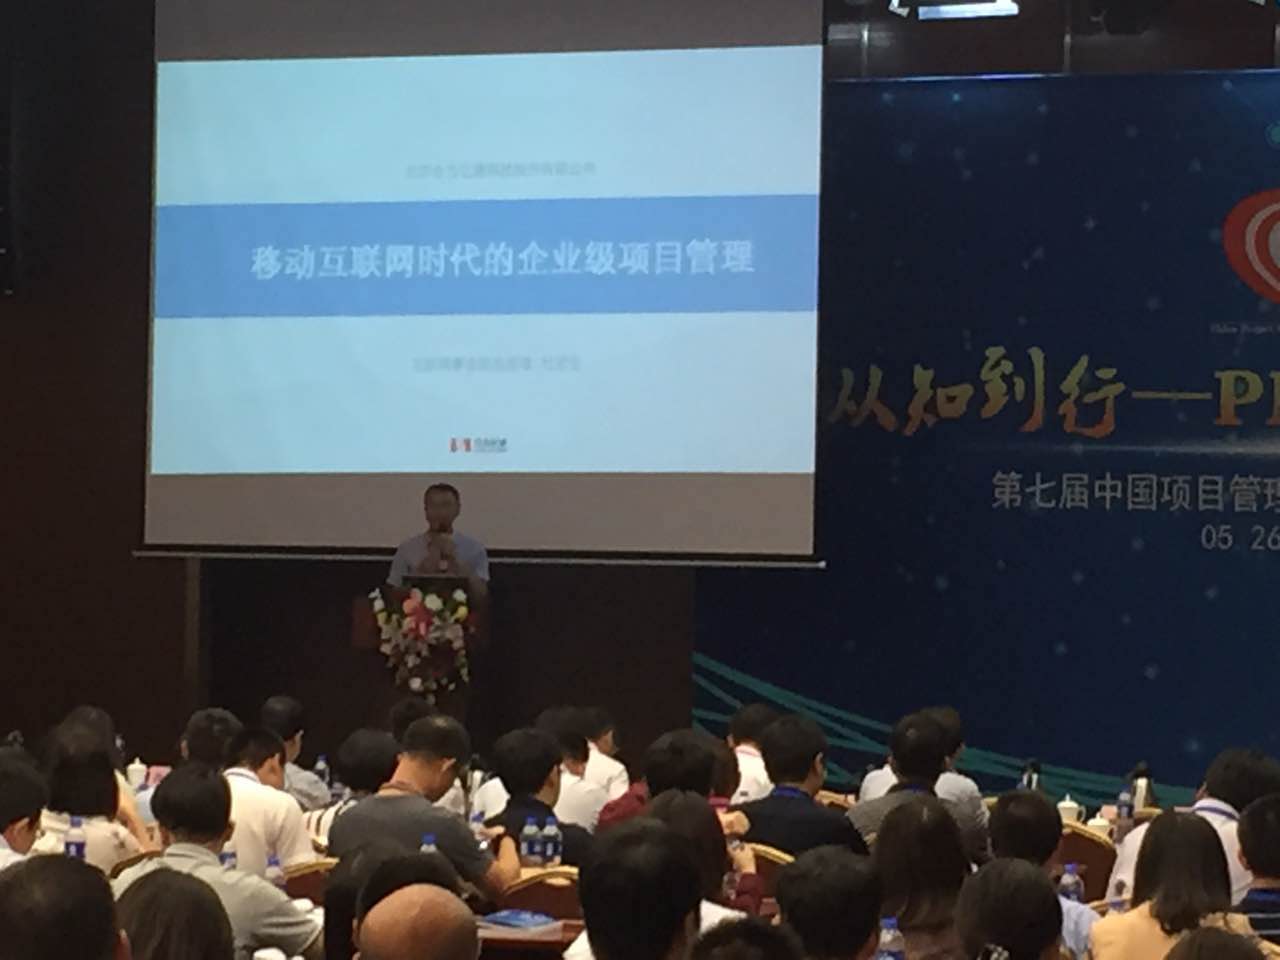 合力亿捷互联网事业部总经理杜宏生先生发表主题演讲